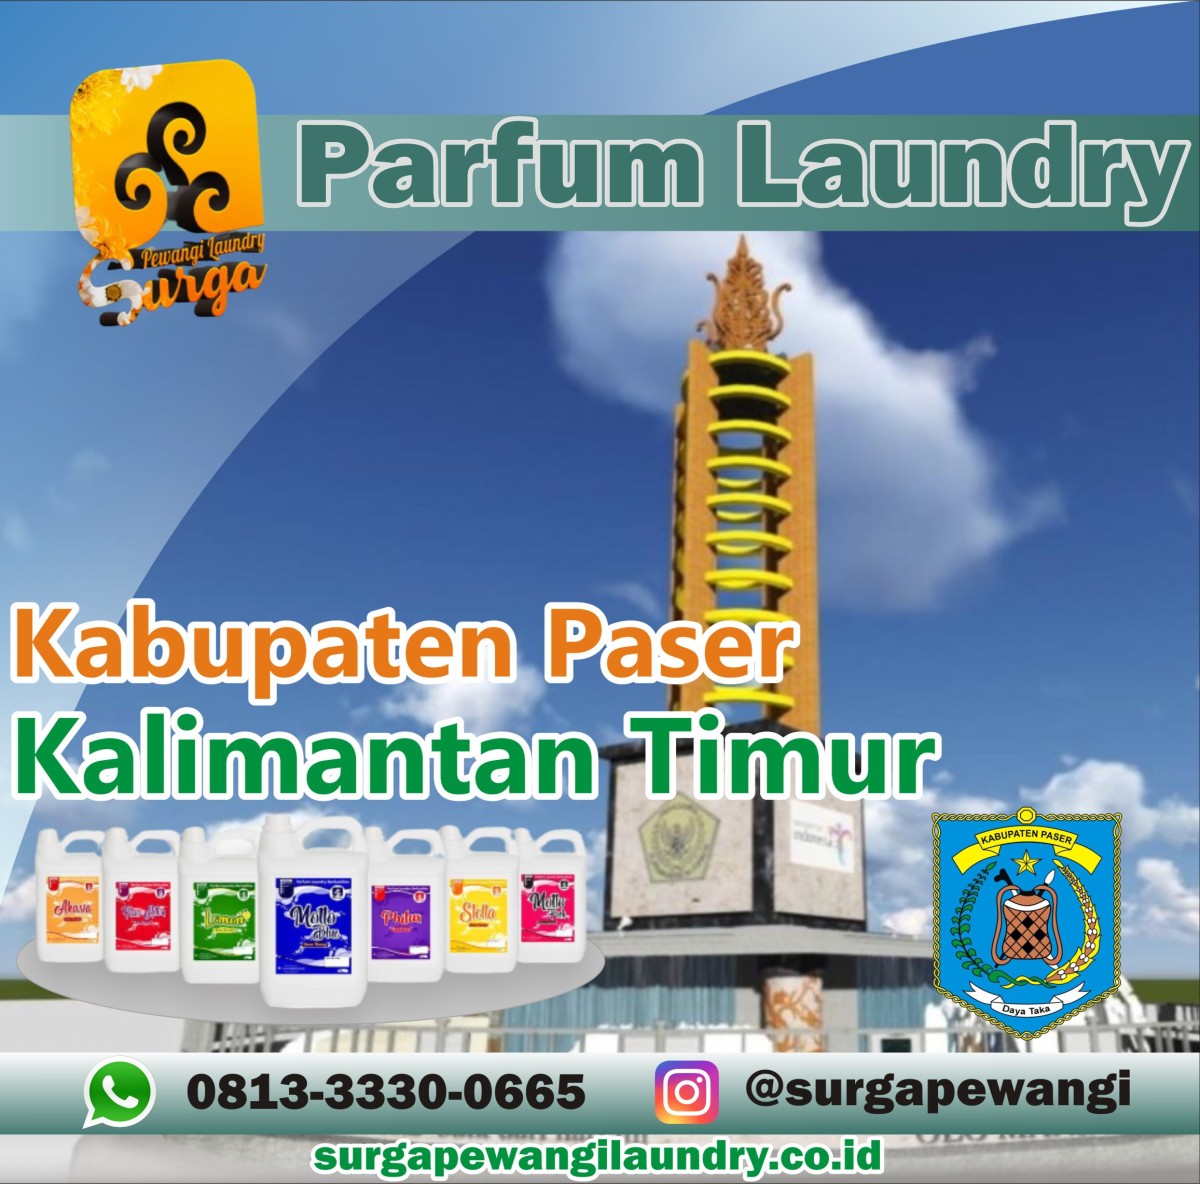 Parfum Laundry Kabupaten Paser, Kalimantan Timur